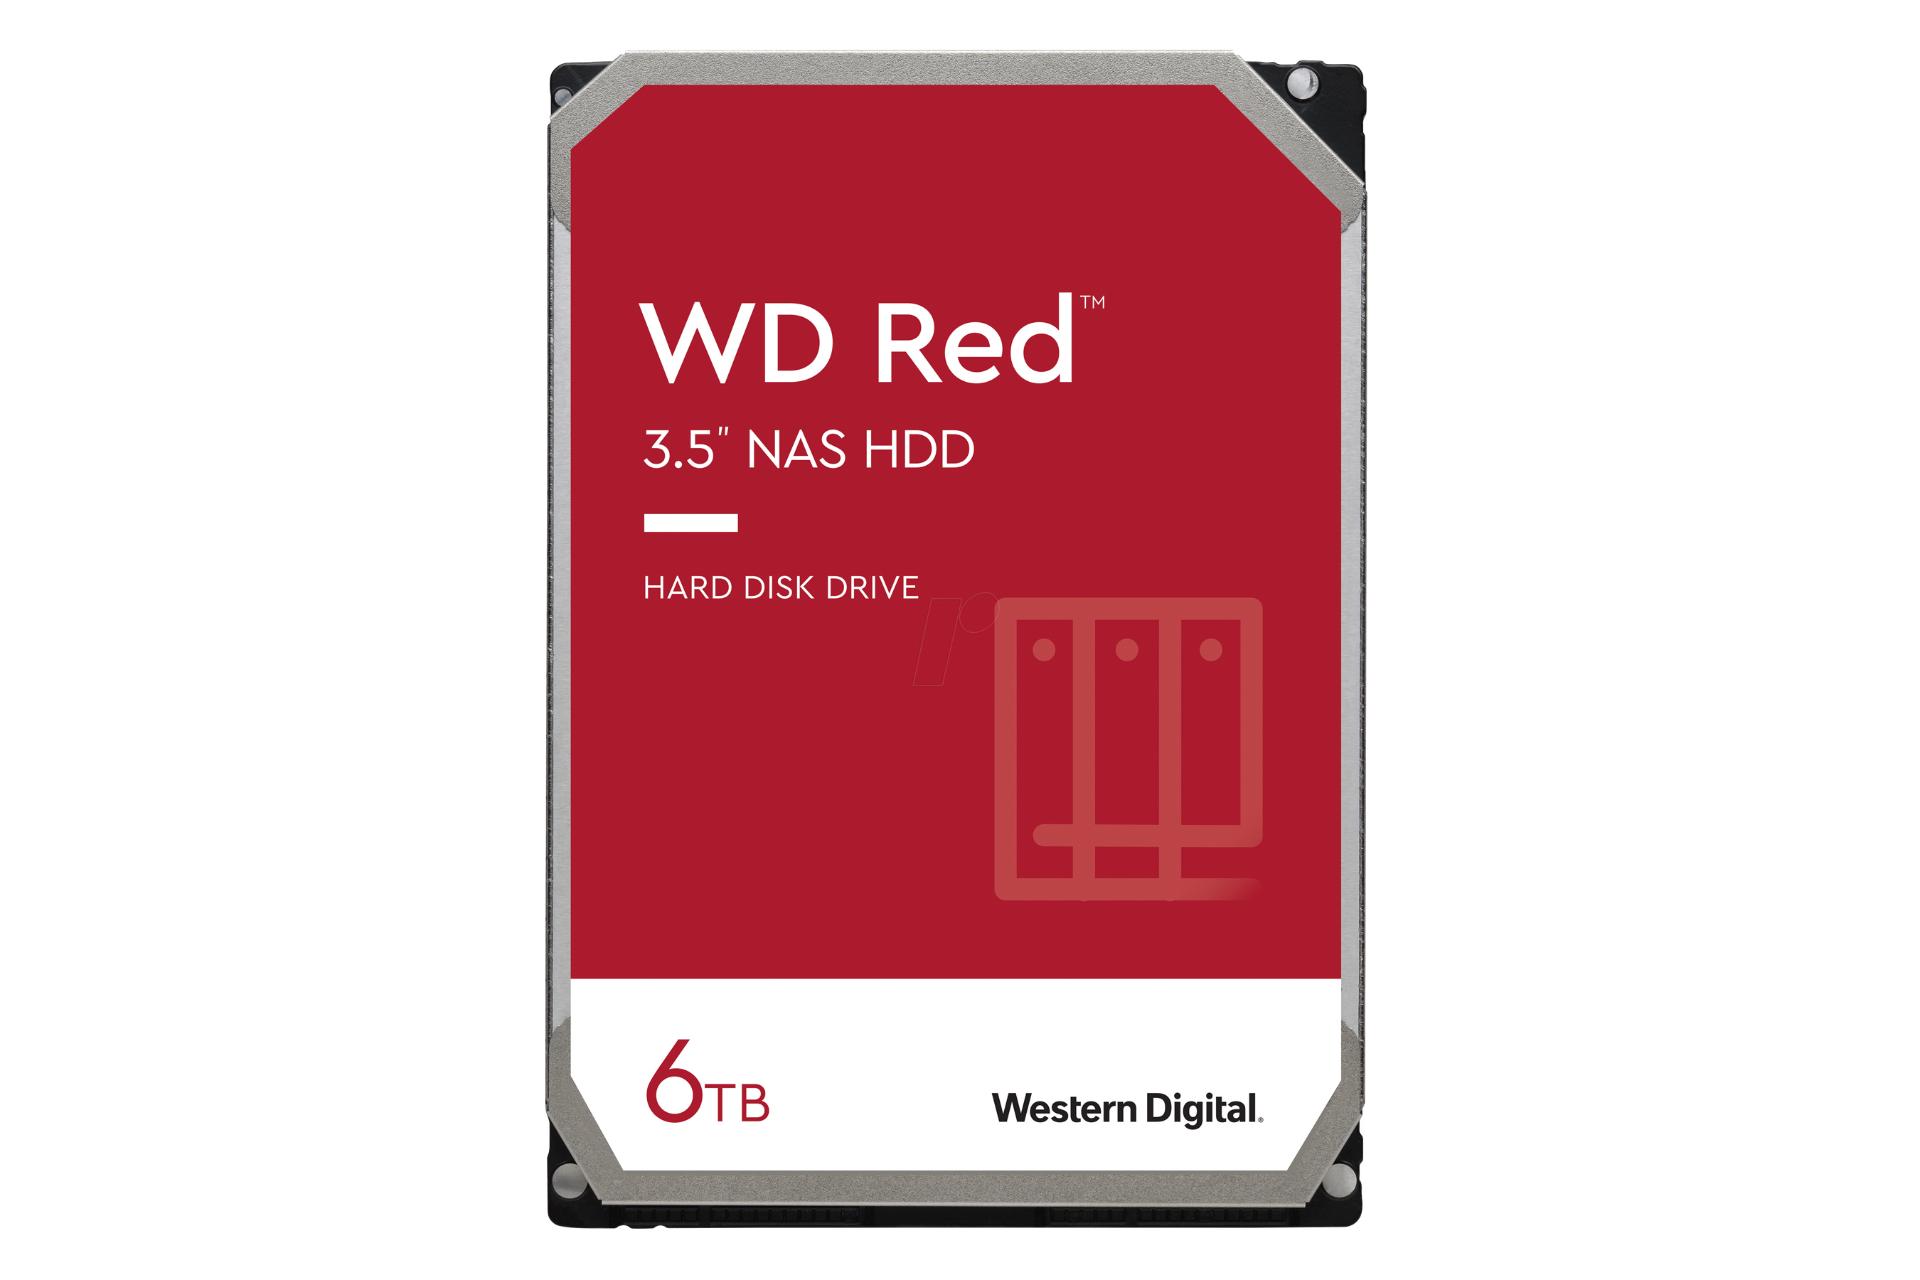 نمای روبرو هارد دیسک وسترن دیجیتال Red Plus WD60EFZX ظرفیت 6 ترابایت